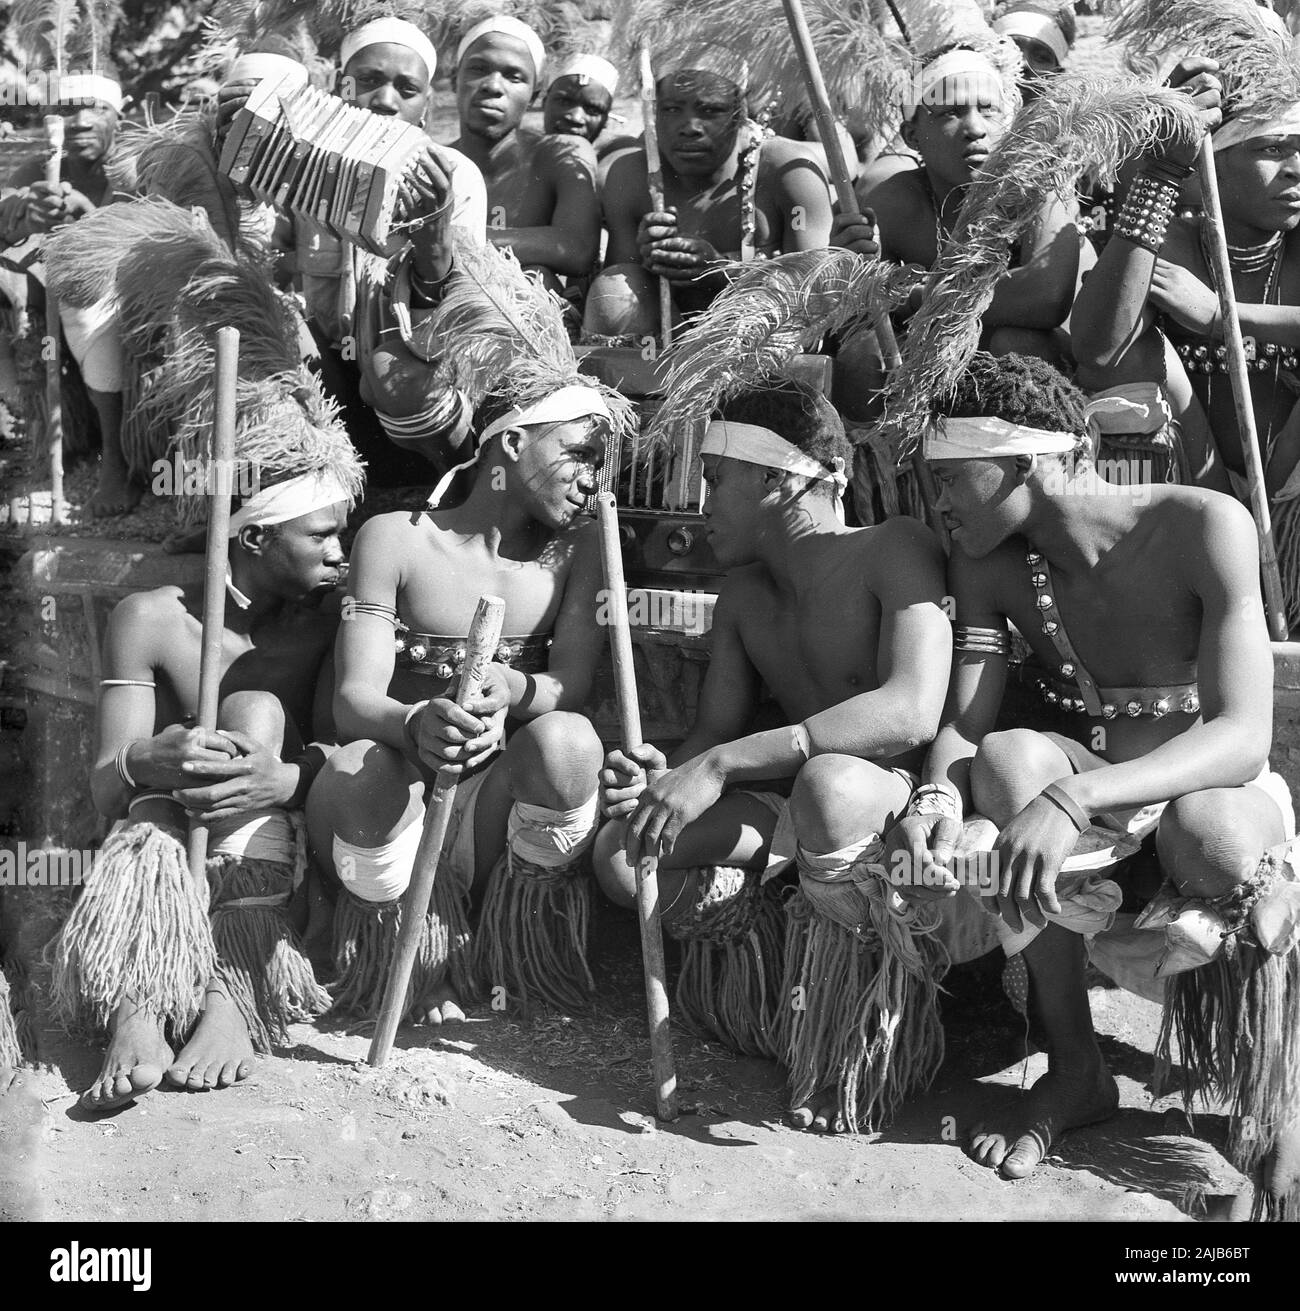 Die 1950er Jahre, historisch, eine Gruppe afrikanischer Ureinwohner in traditionellen Stamm- oder Jagdkleiden, die sich zu einem Bild mit einem Briten versammelten, machten Bush Radio, Afrika. Stockfoto